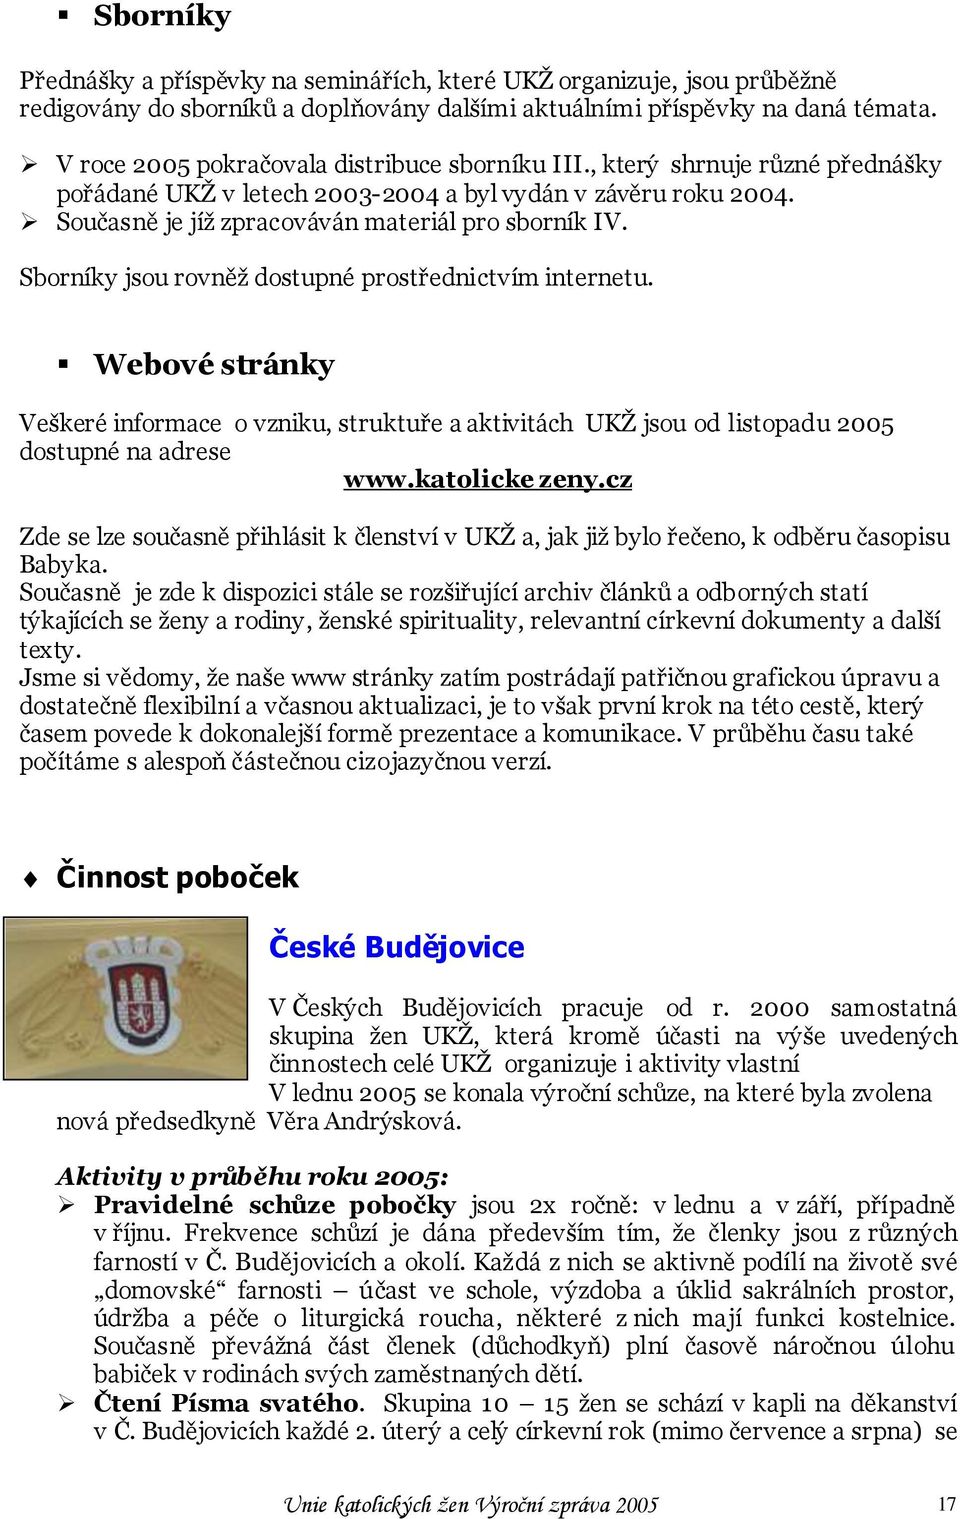 Sborníky jsou rovněţ dostupné prostřednictvím internetu. Webové stránky Veškeré informace o vzniku, struktuře a aktivitách UKŢ jsou od listopadu 2005 dostupné na adrese www.katolicke zeny.